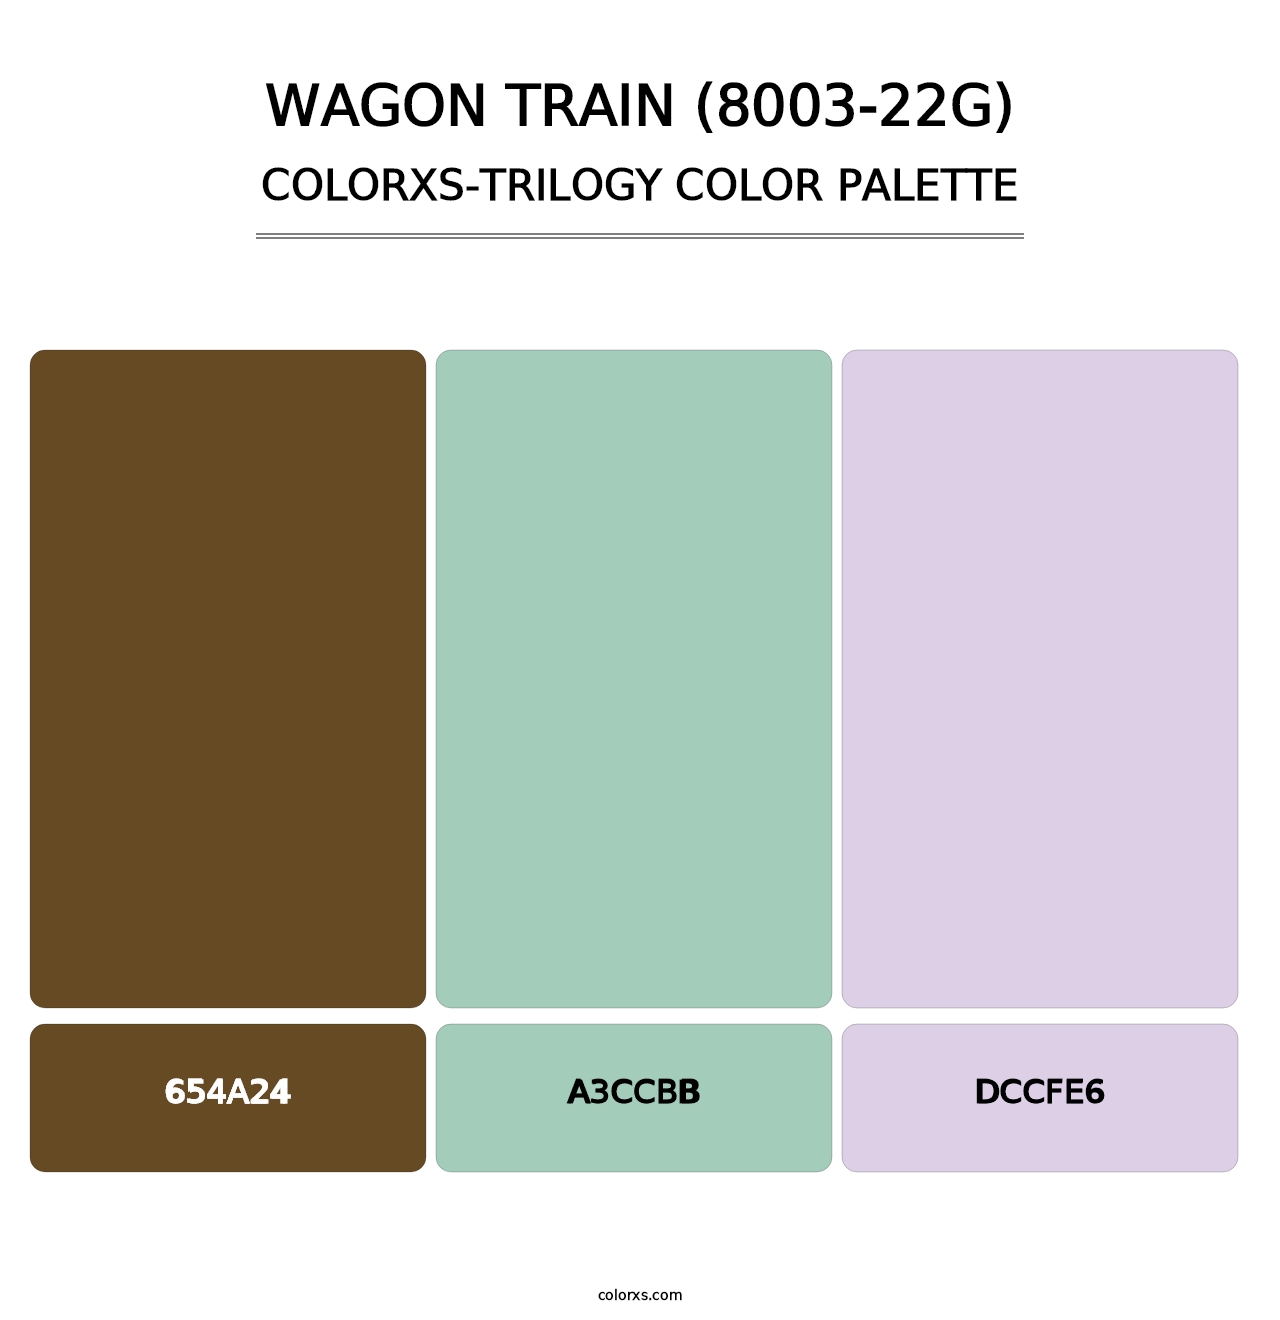 Wagon Train (8003-22G) - Colorxs Trilogy Palette